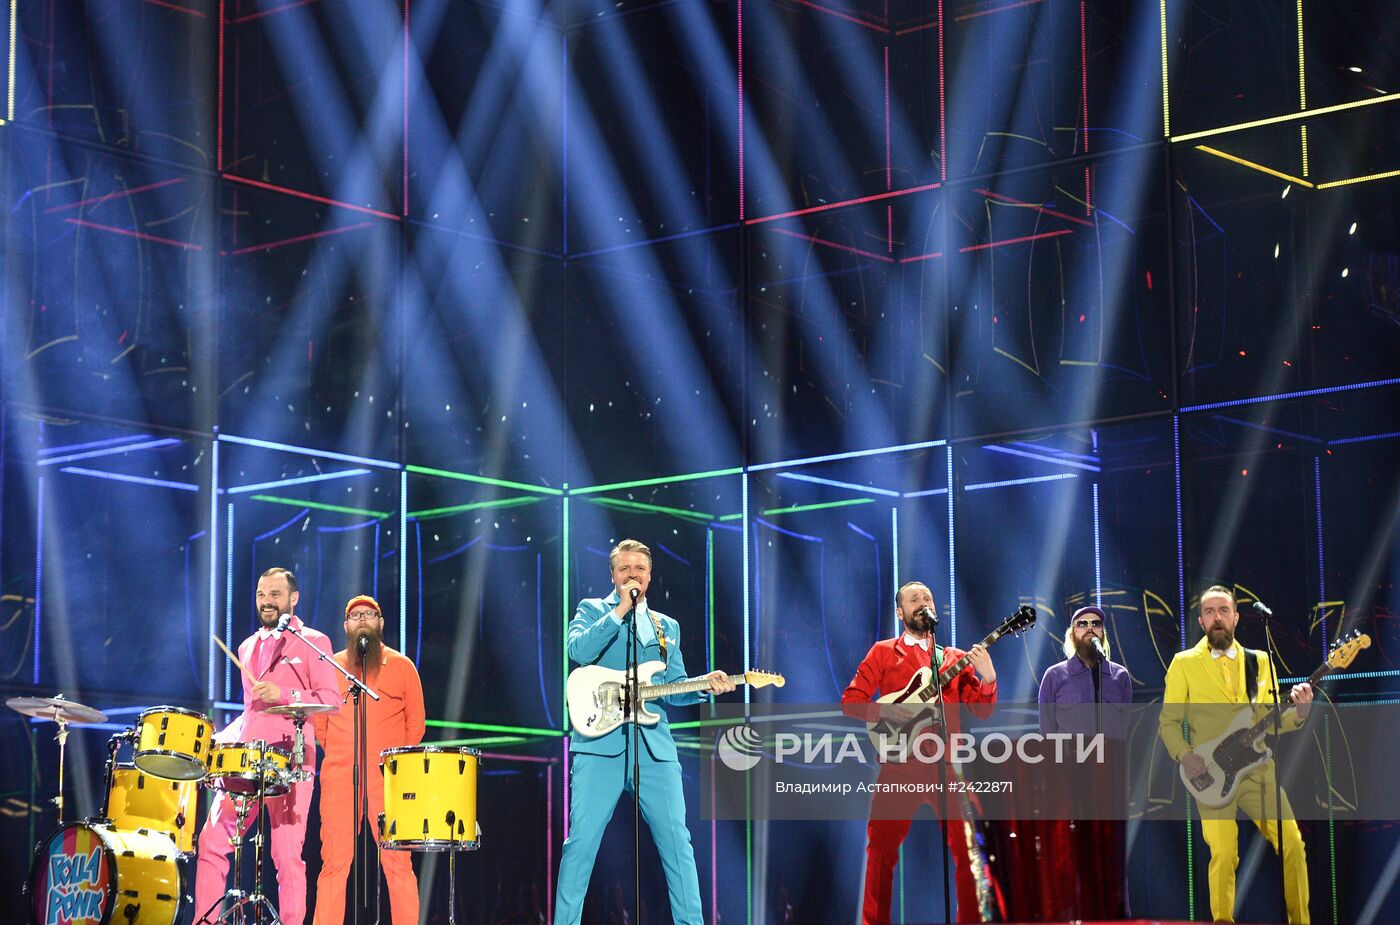 Репетиция полуфинала международного конкурса песни "Евровидение-2014"